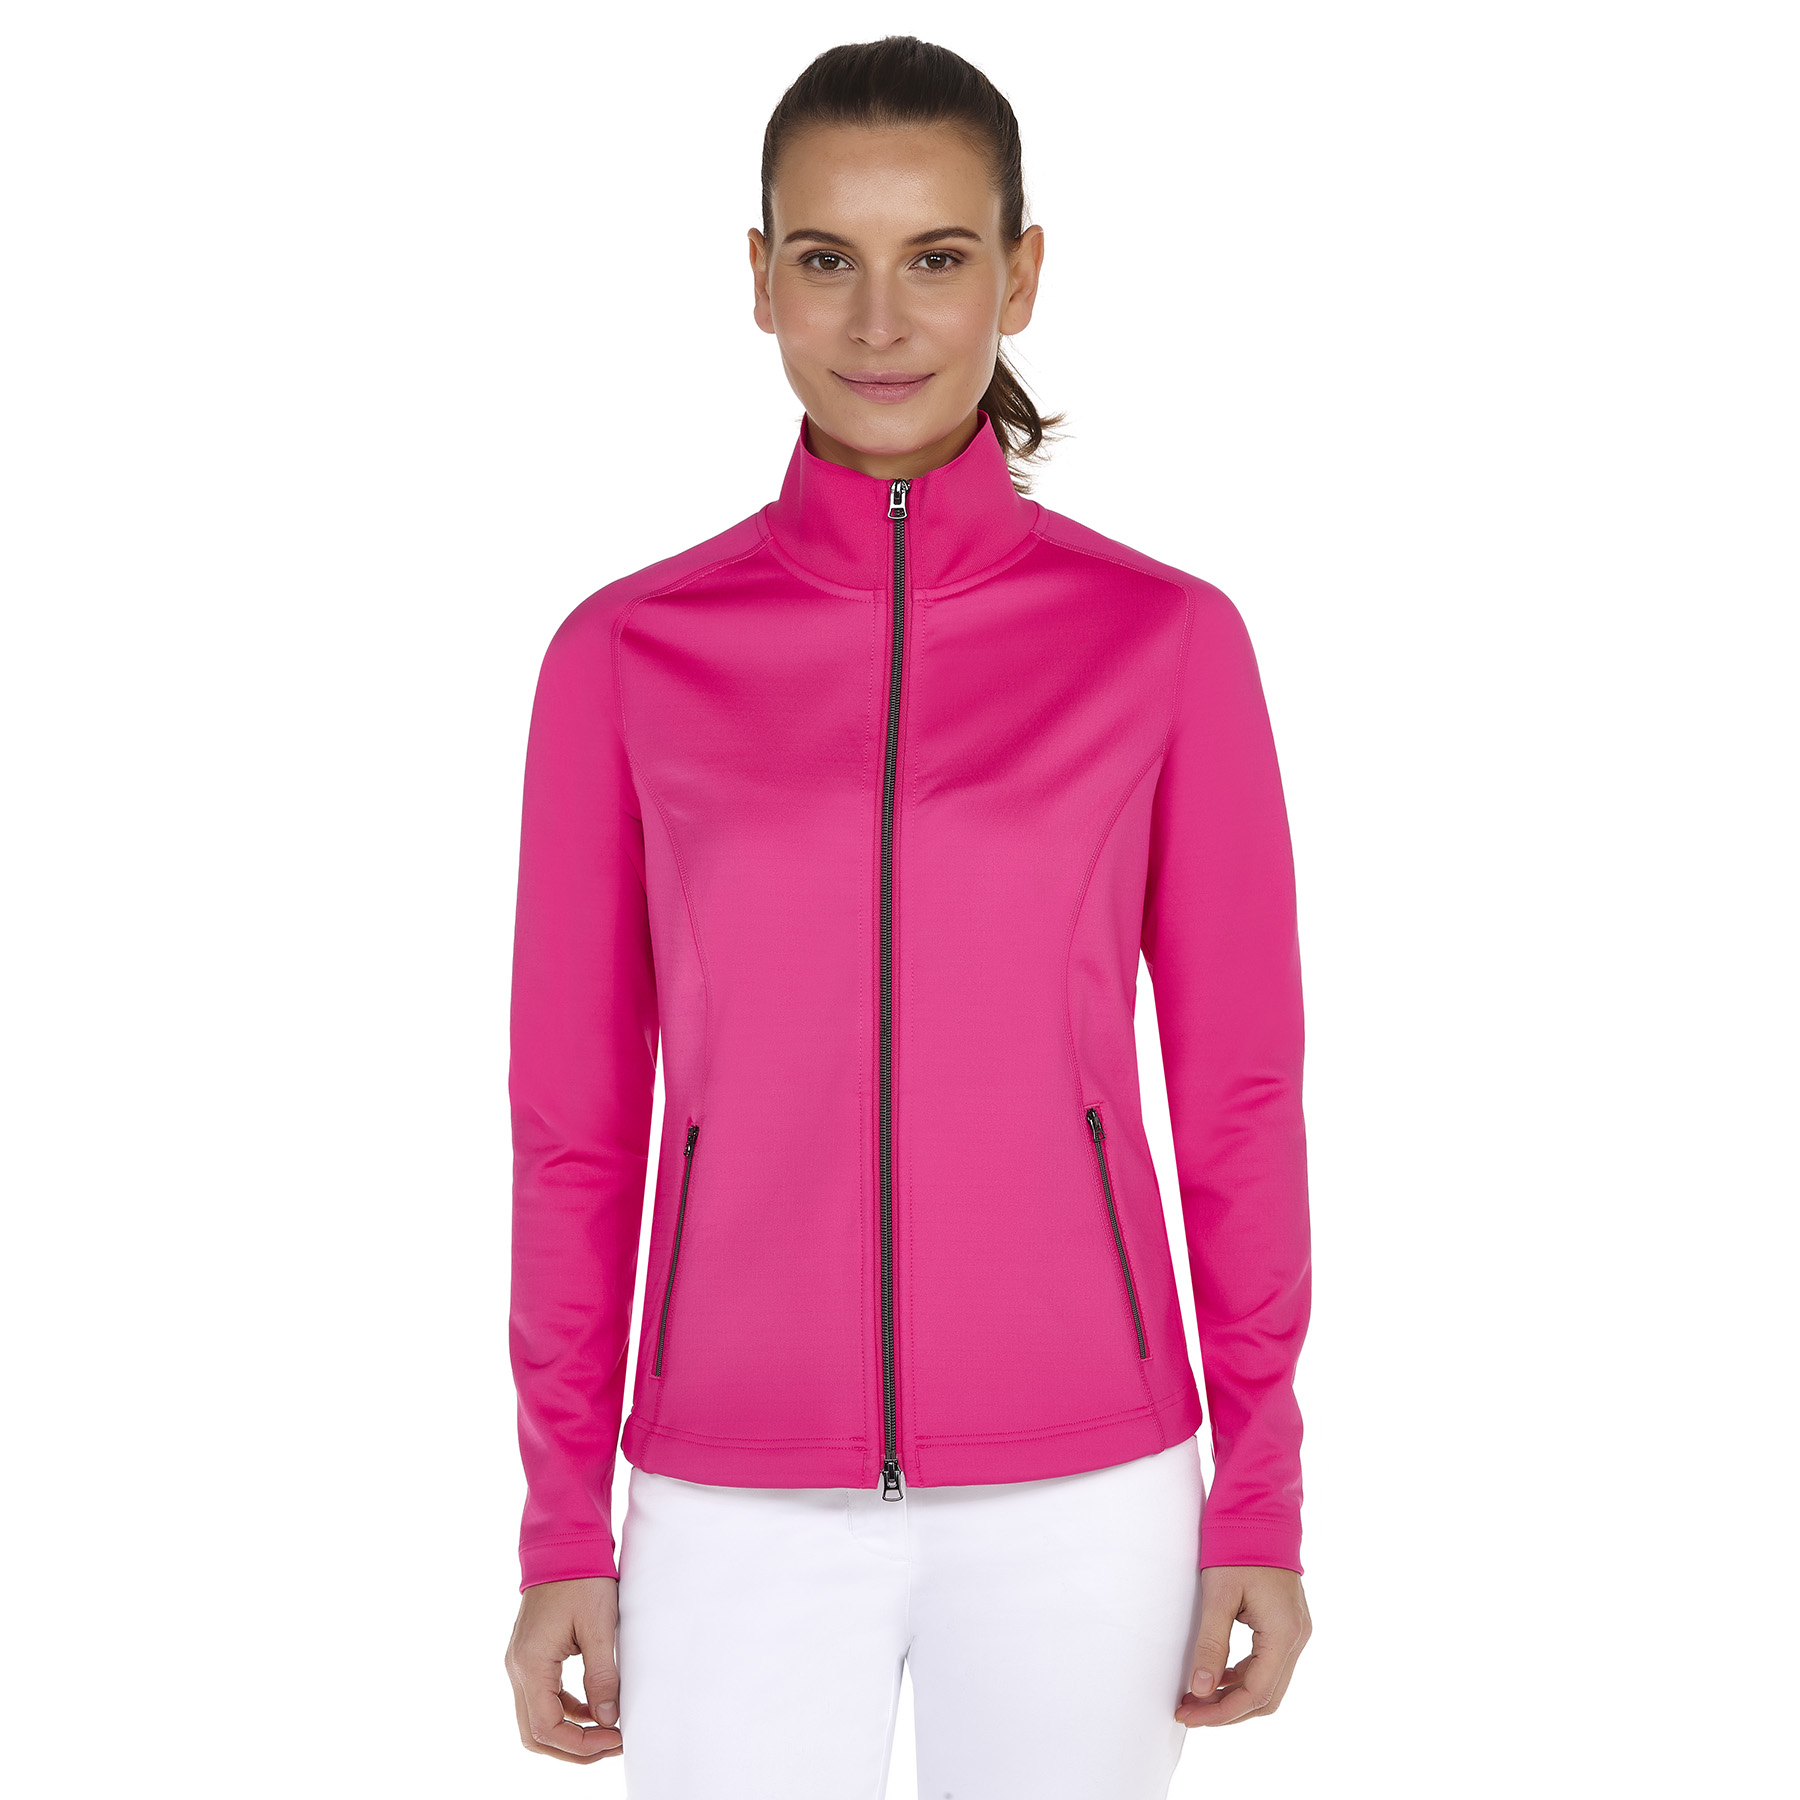 Valiente Stretch Jacke in pink online kaufen